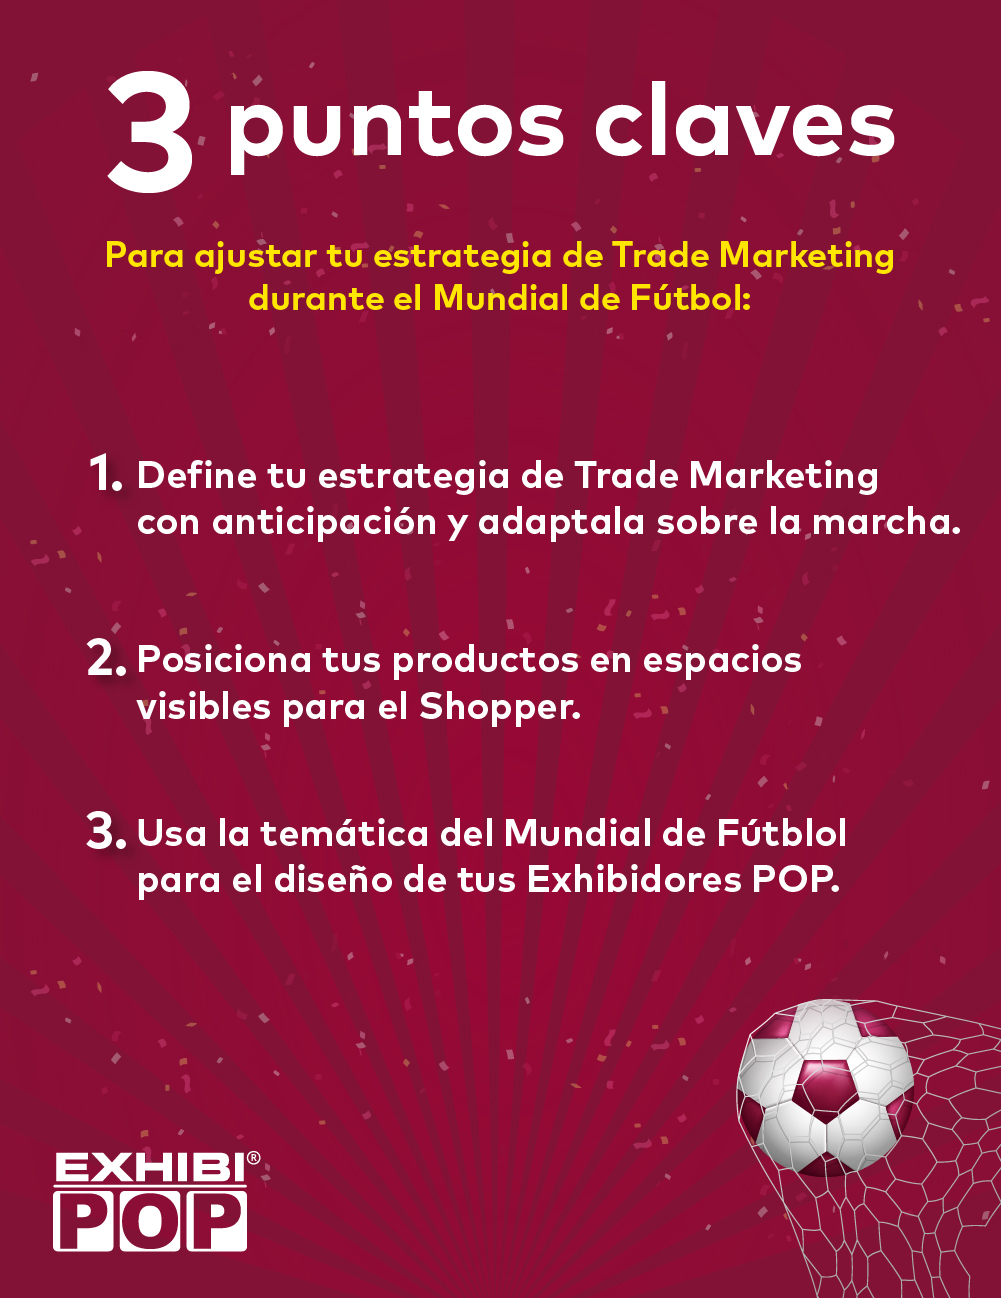 3 puntos claves para ajustar tu estrategia de Trade Marketing durante el Mundial de Fútbol.